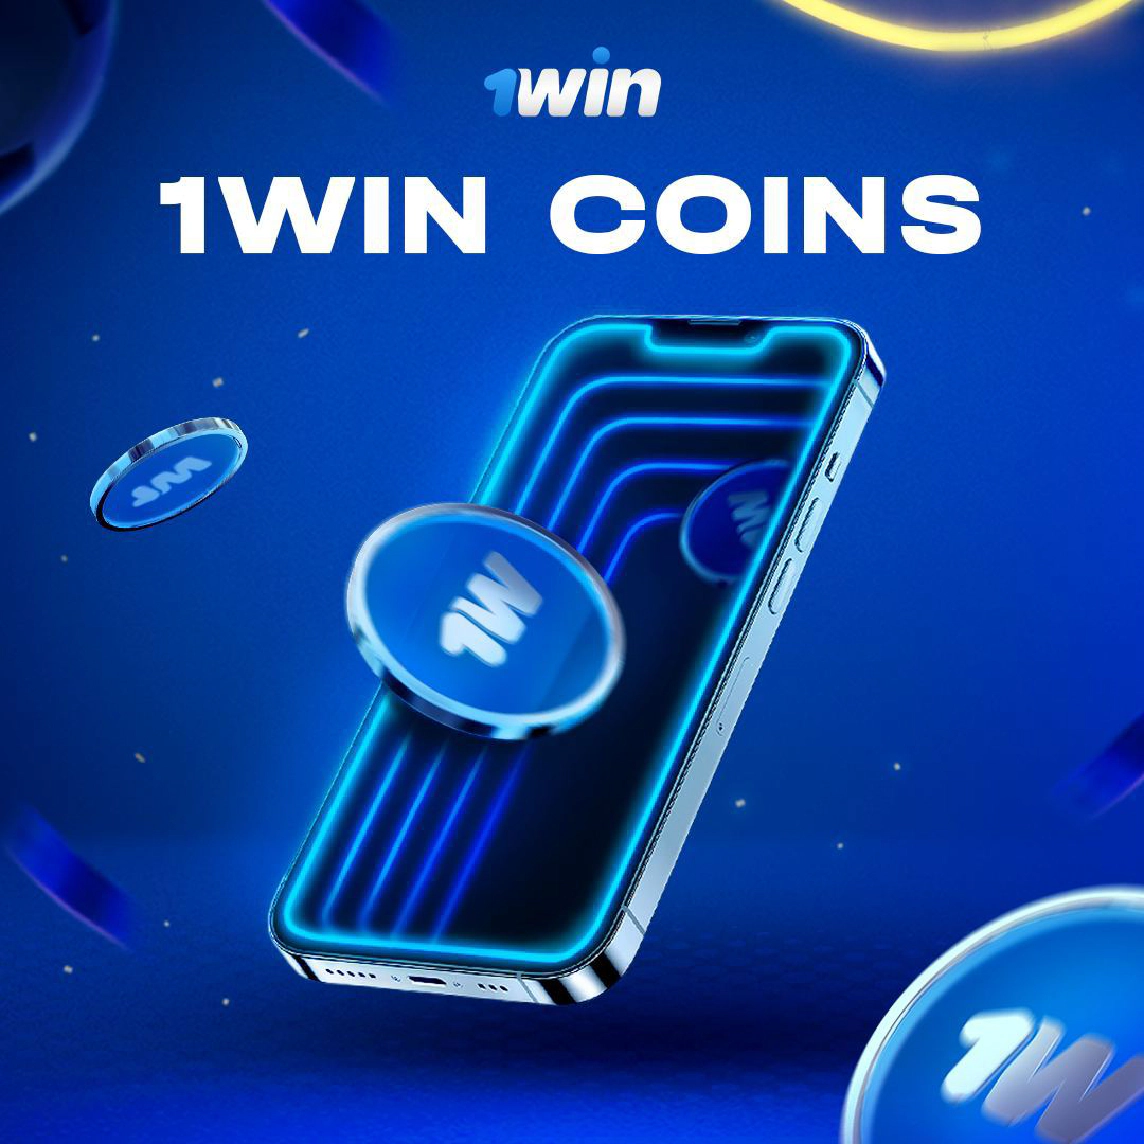 1win coins como obter